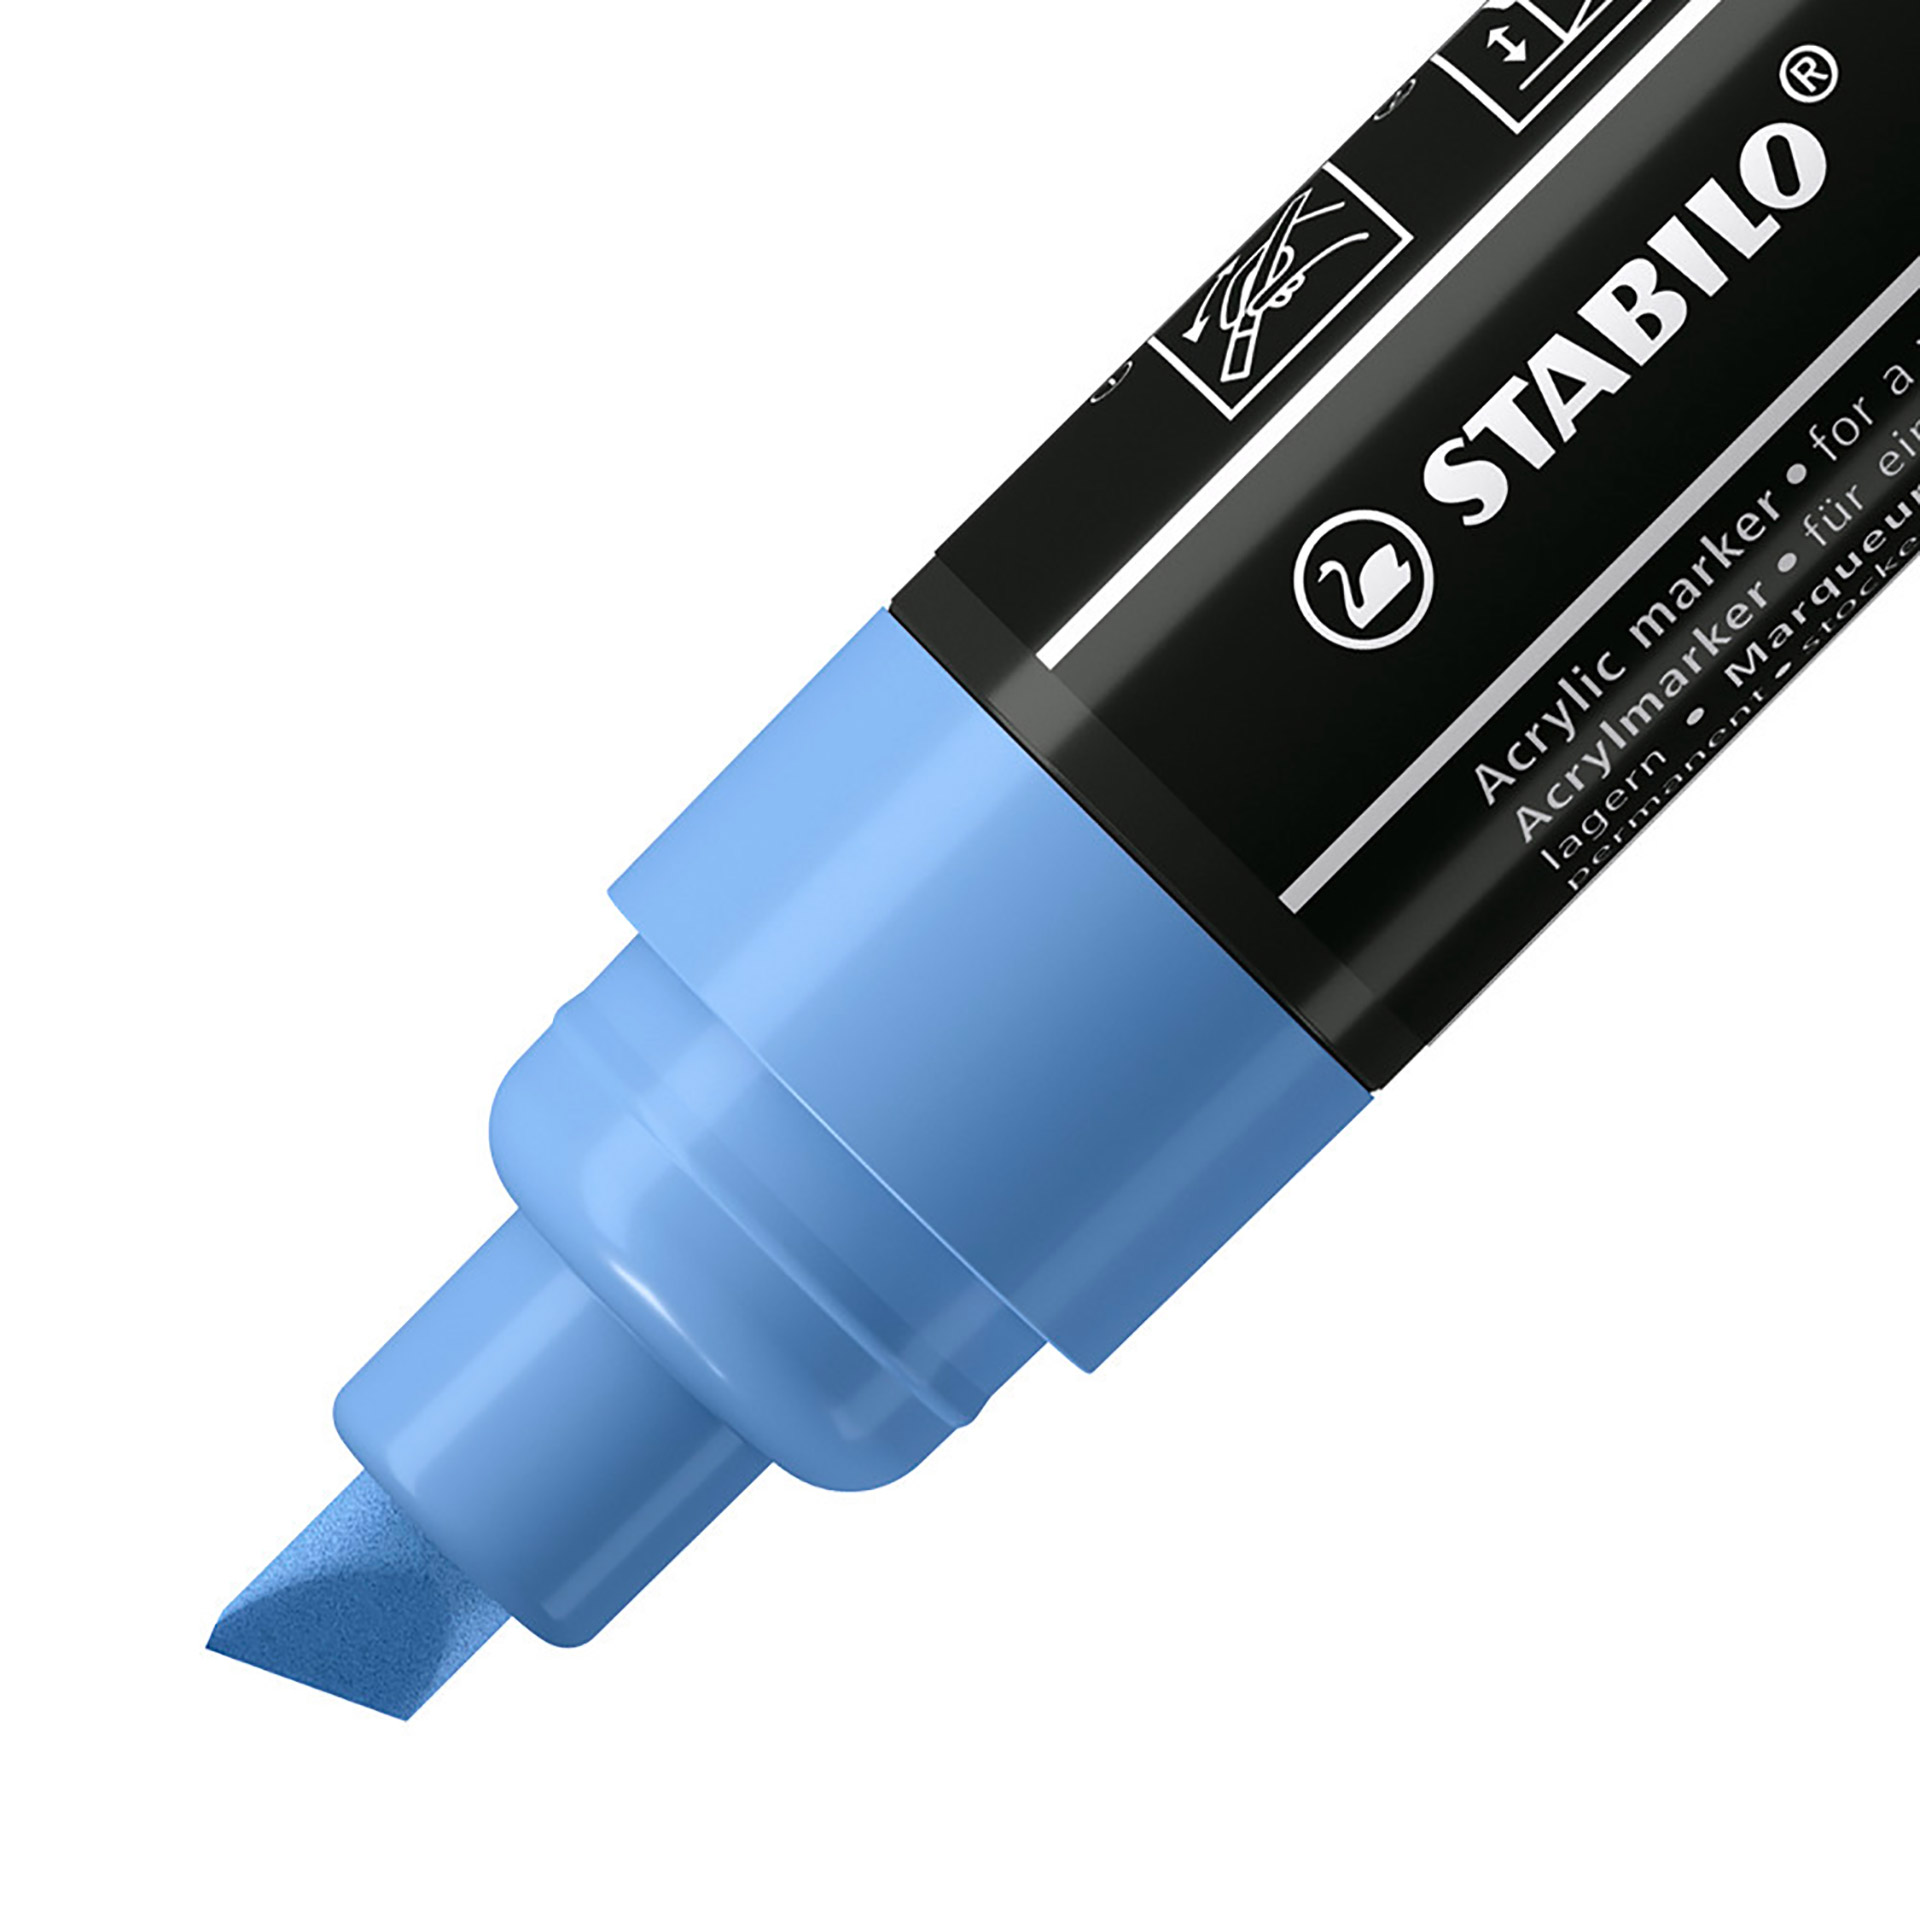 STABILO FREE Acrylic - T800C Punta a scalpello 4-10mm - Confezione da 5 - Blu C, , large